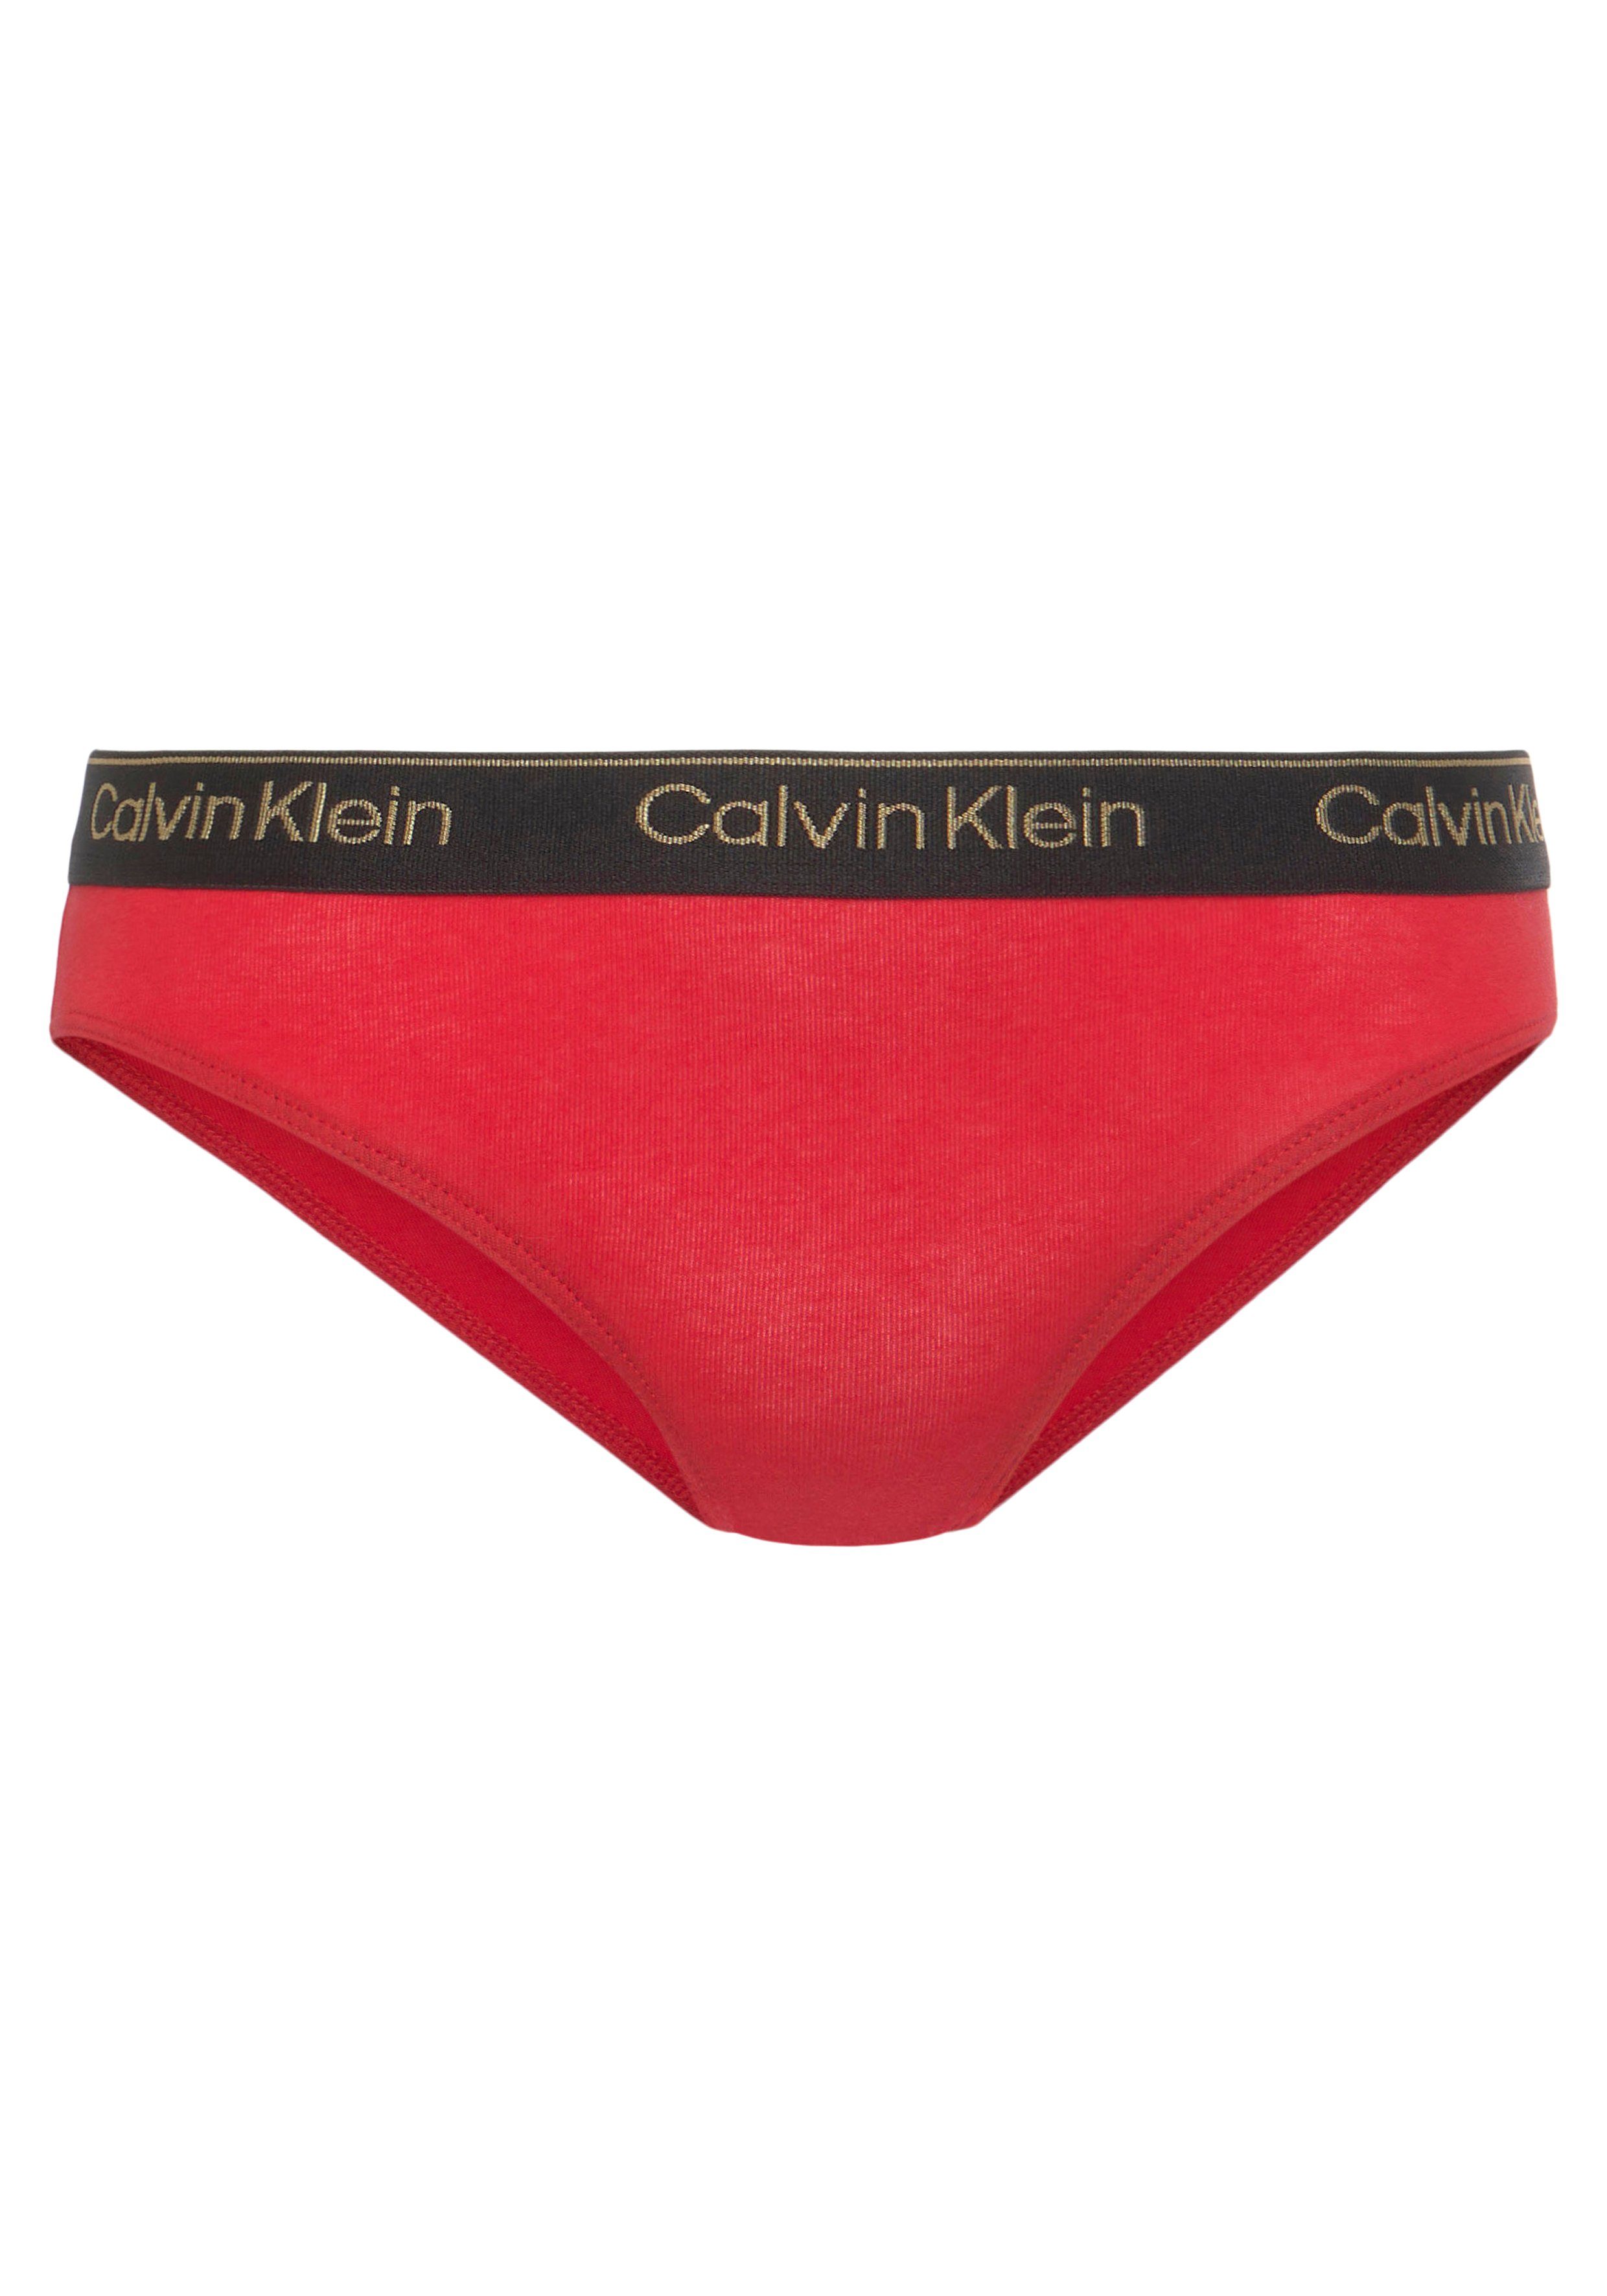 Calvin Klein Aop/Rglare/Spink/Pwhite/Pblack Elastikbund BIKINI mit 5er-Pack) (Packung, 5-St., sportlichem Bikinislip Underwear 5PK